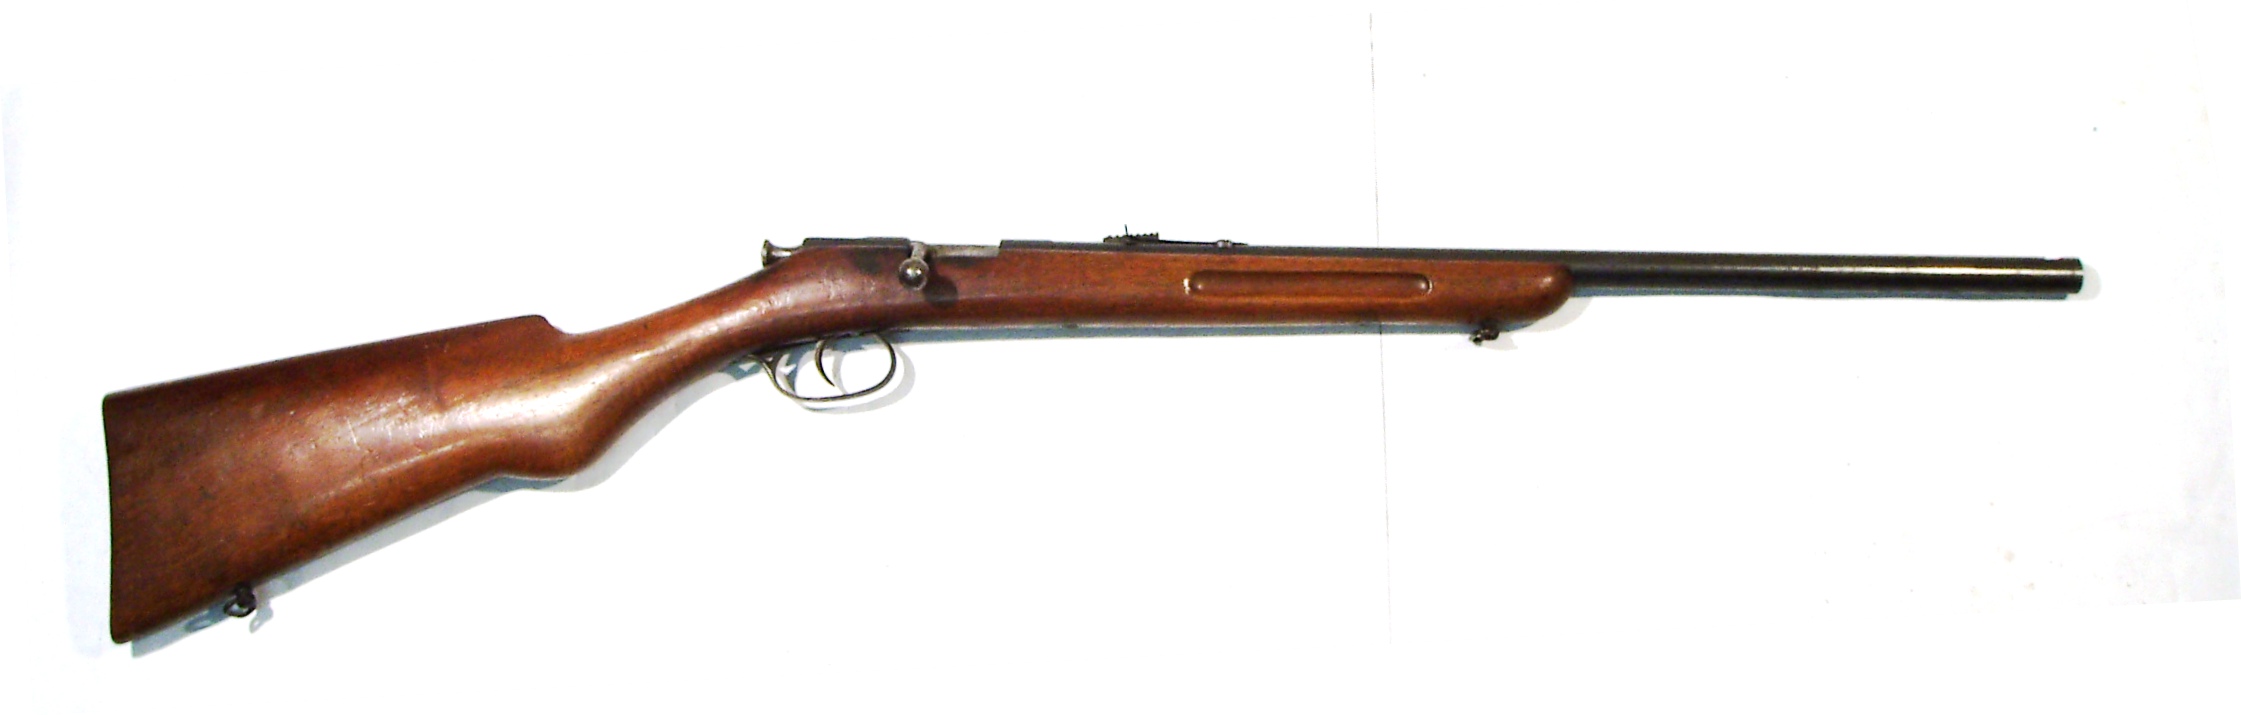 Carabina F. DUMOULIN, calibre 22 Lr., Nº 129-0